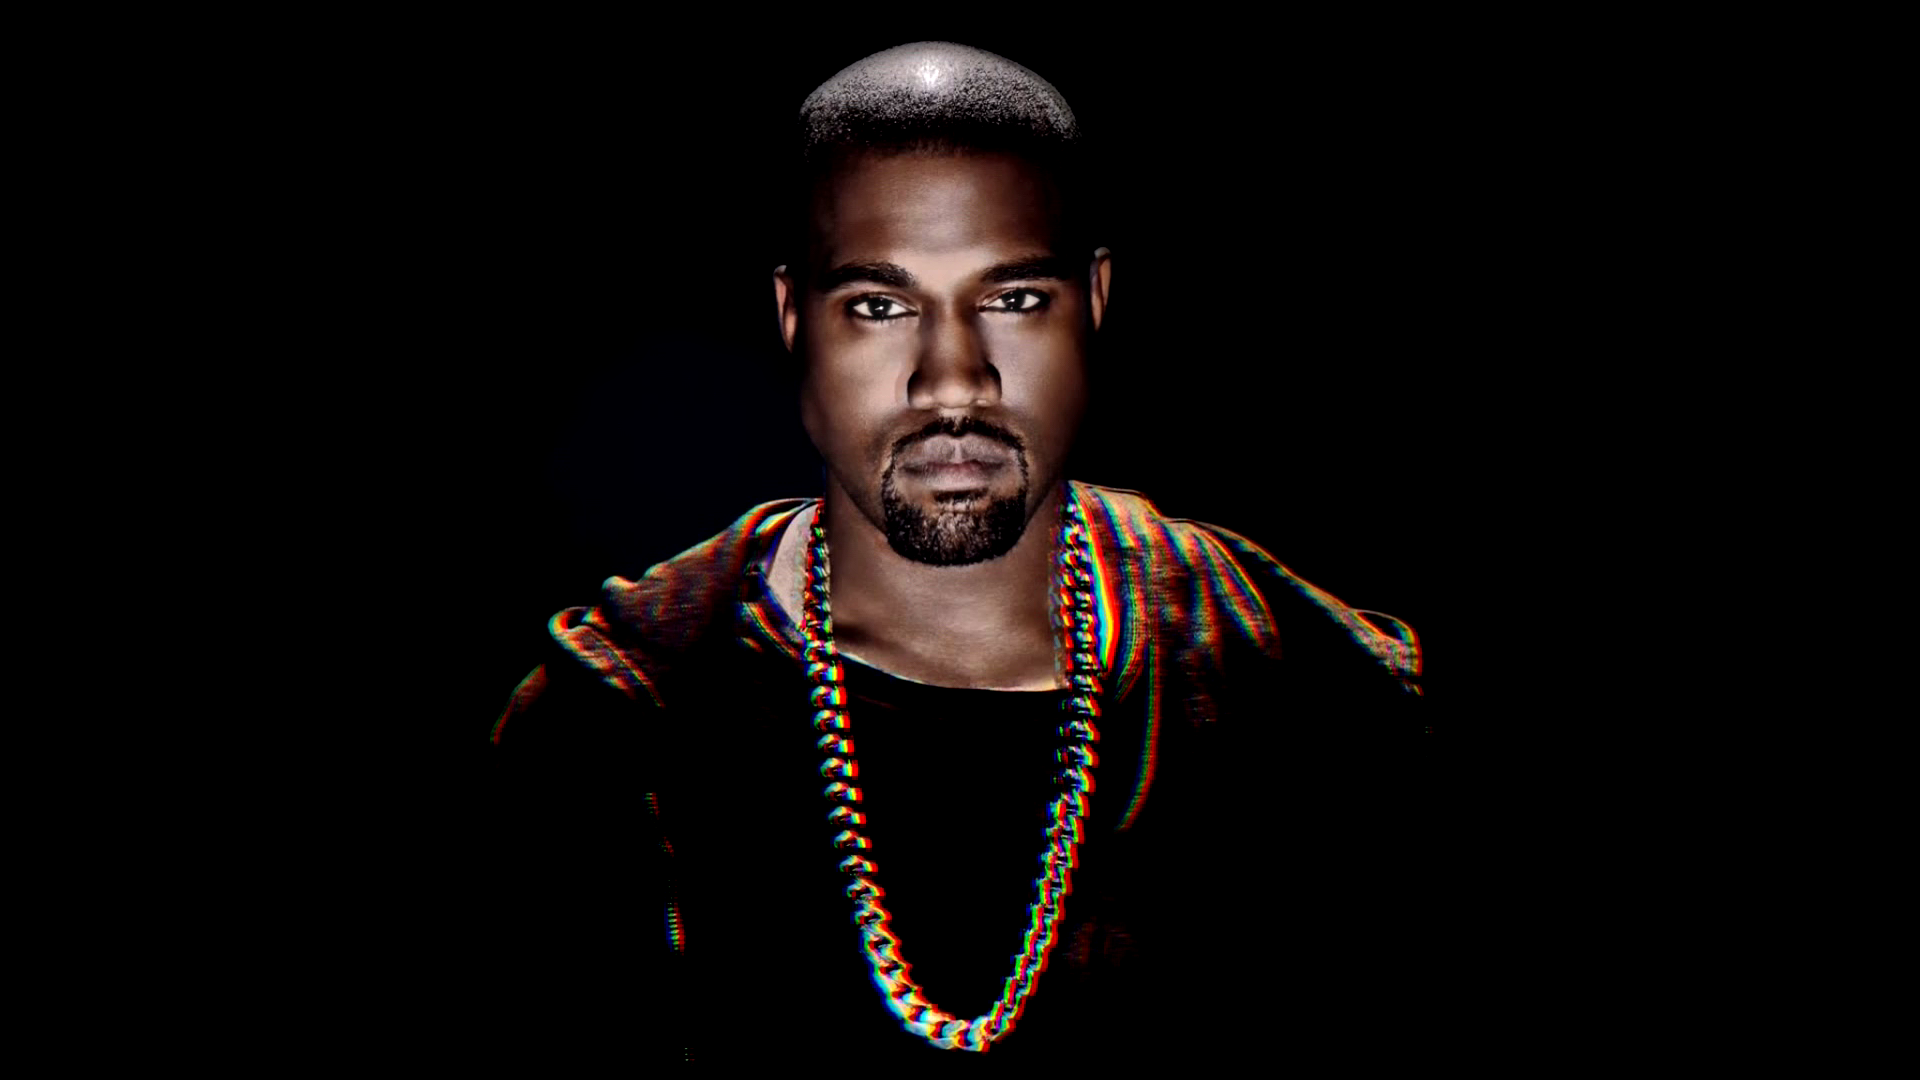 Kanye West Wallpaper